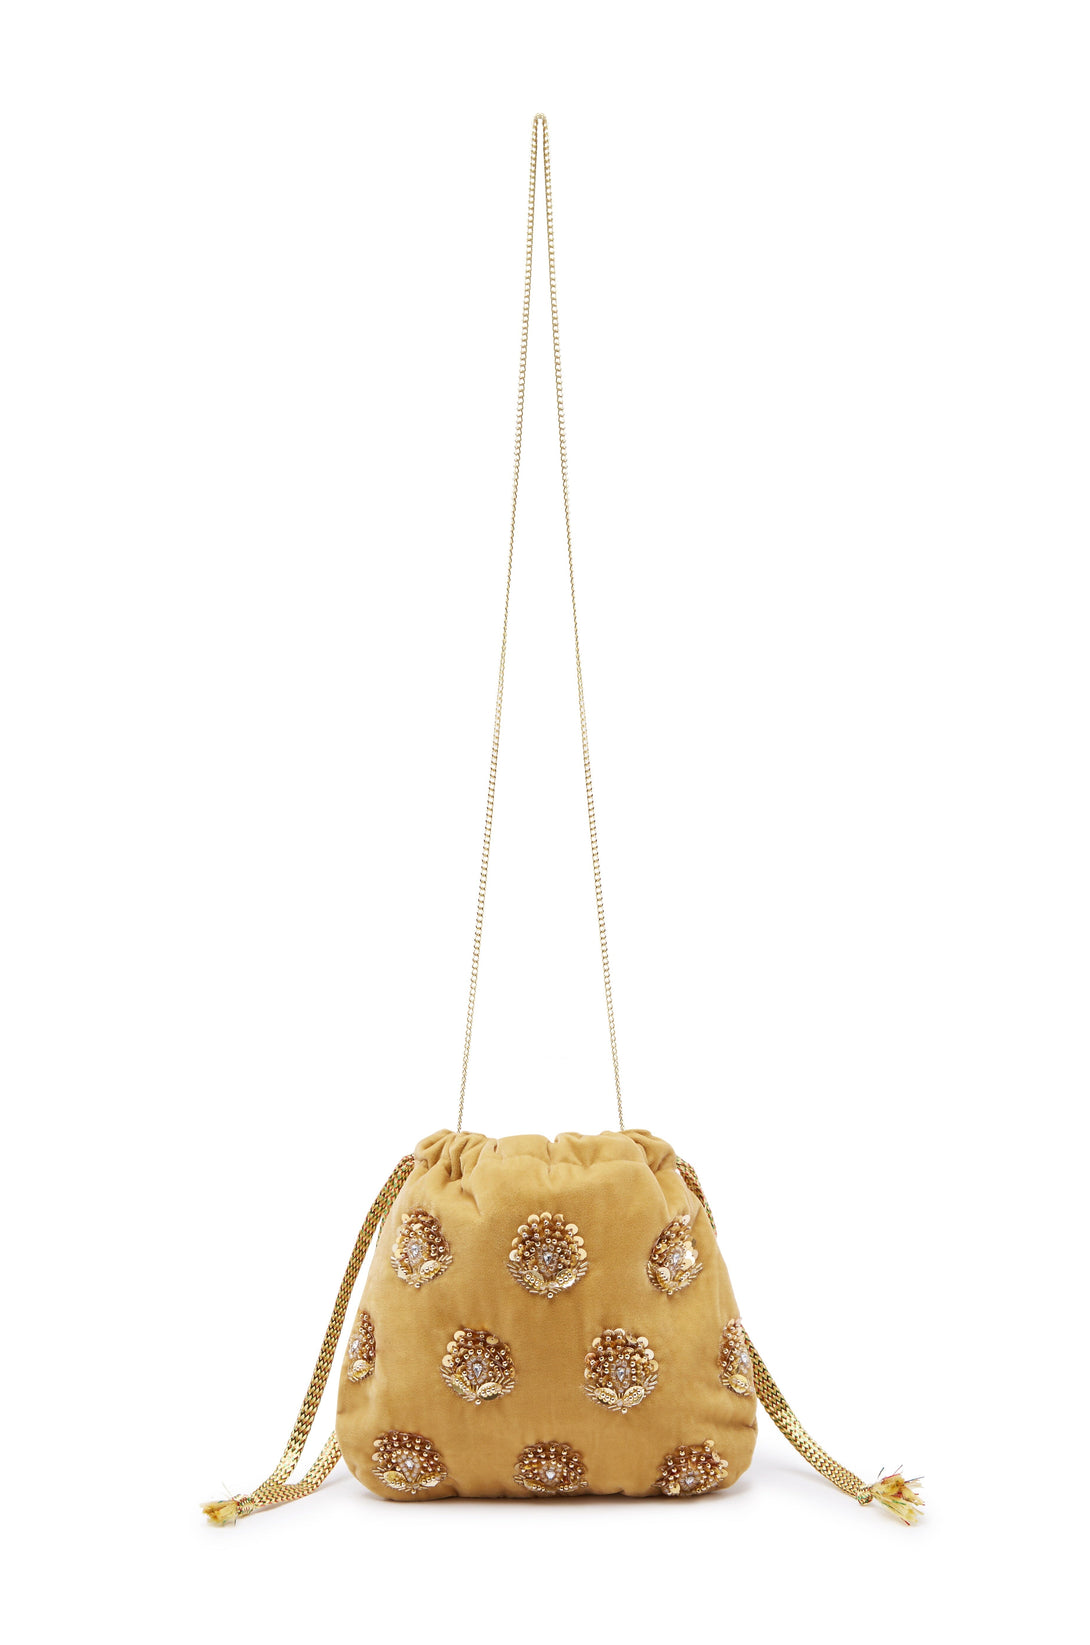 Rhiannon Velvet Drawstring Bag Gold Seasonal Handbag